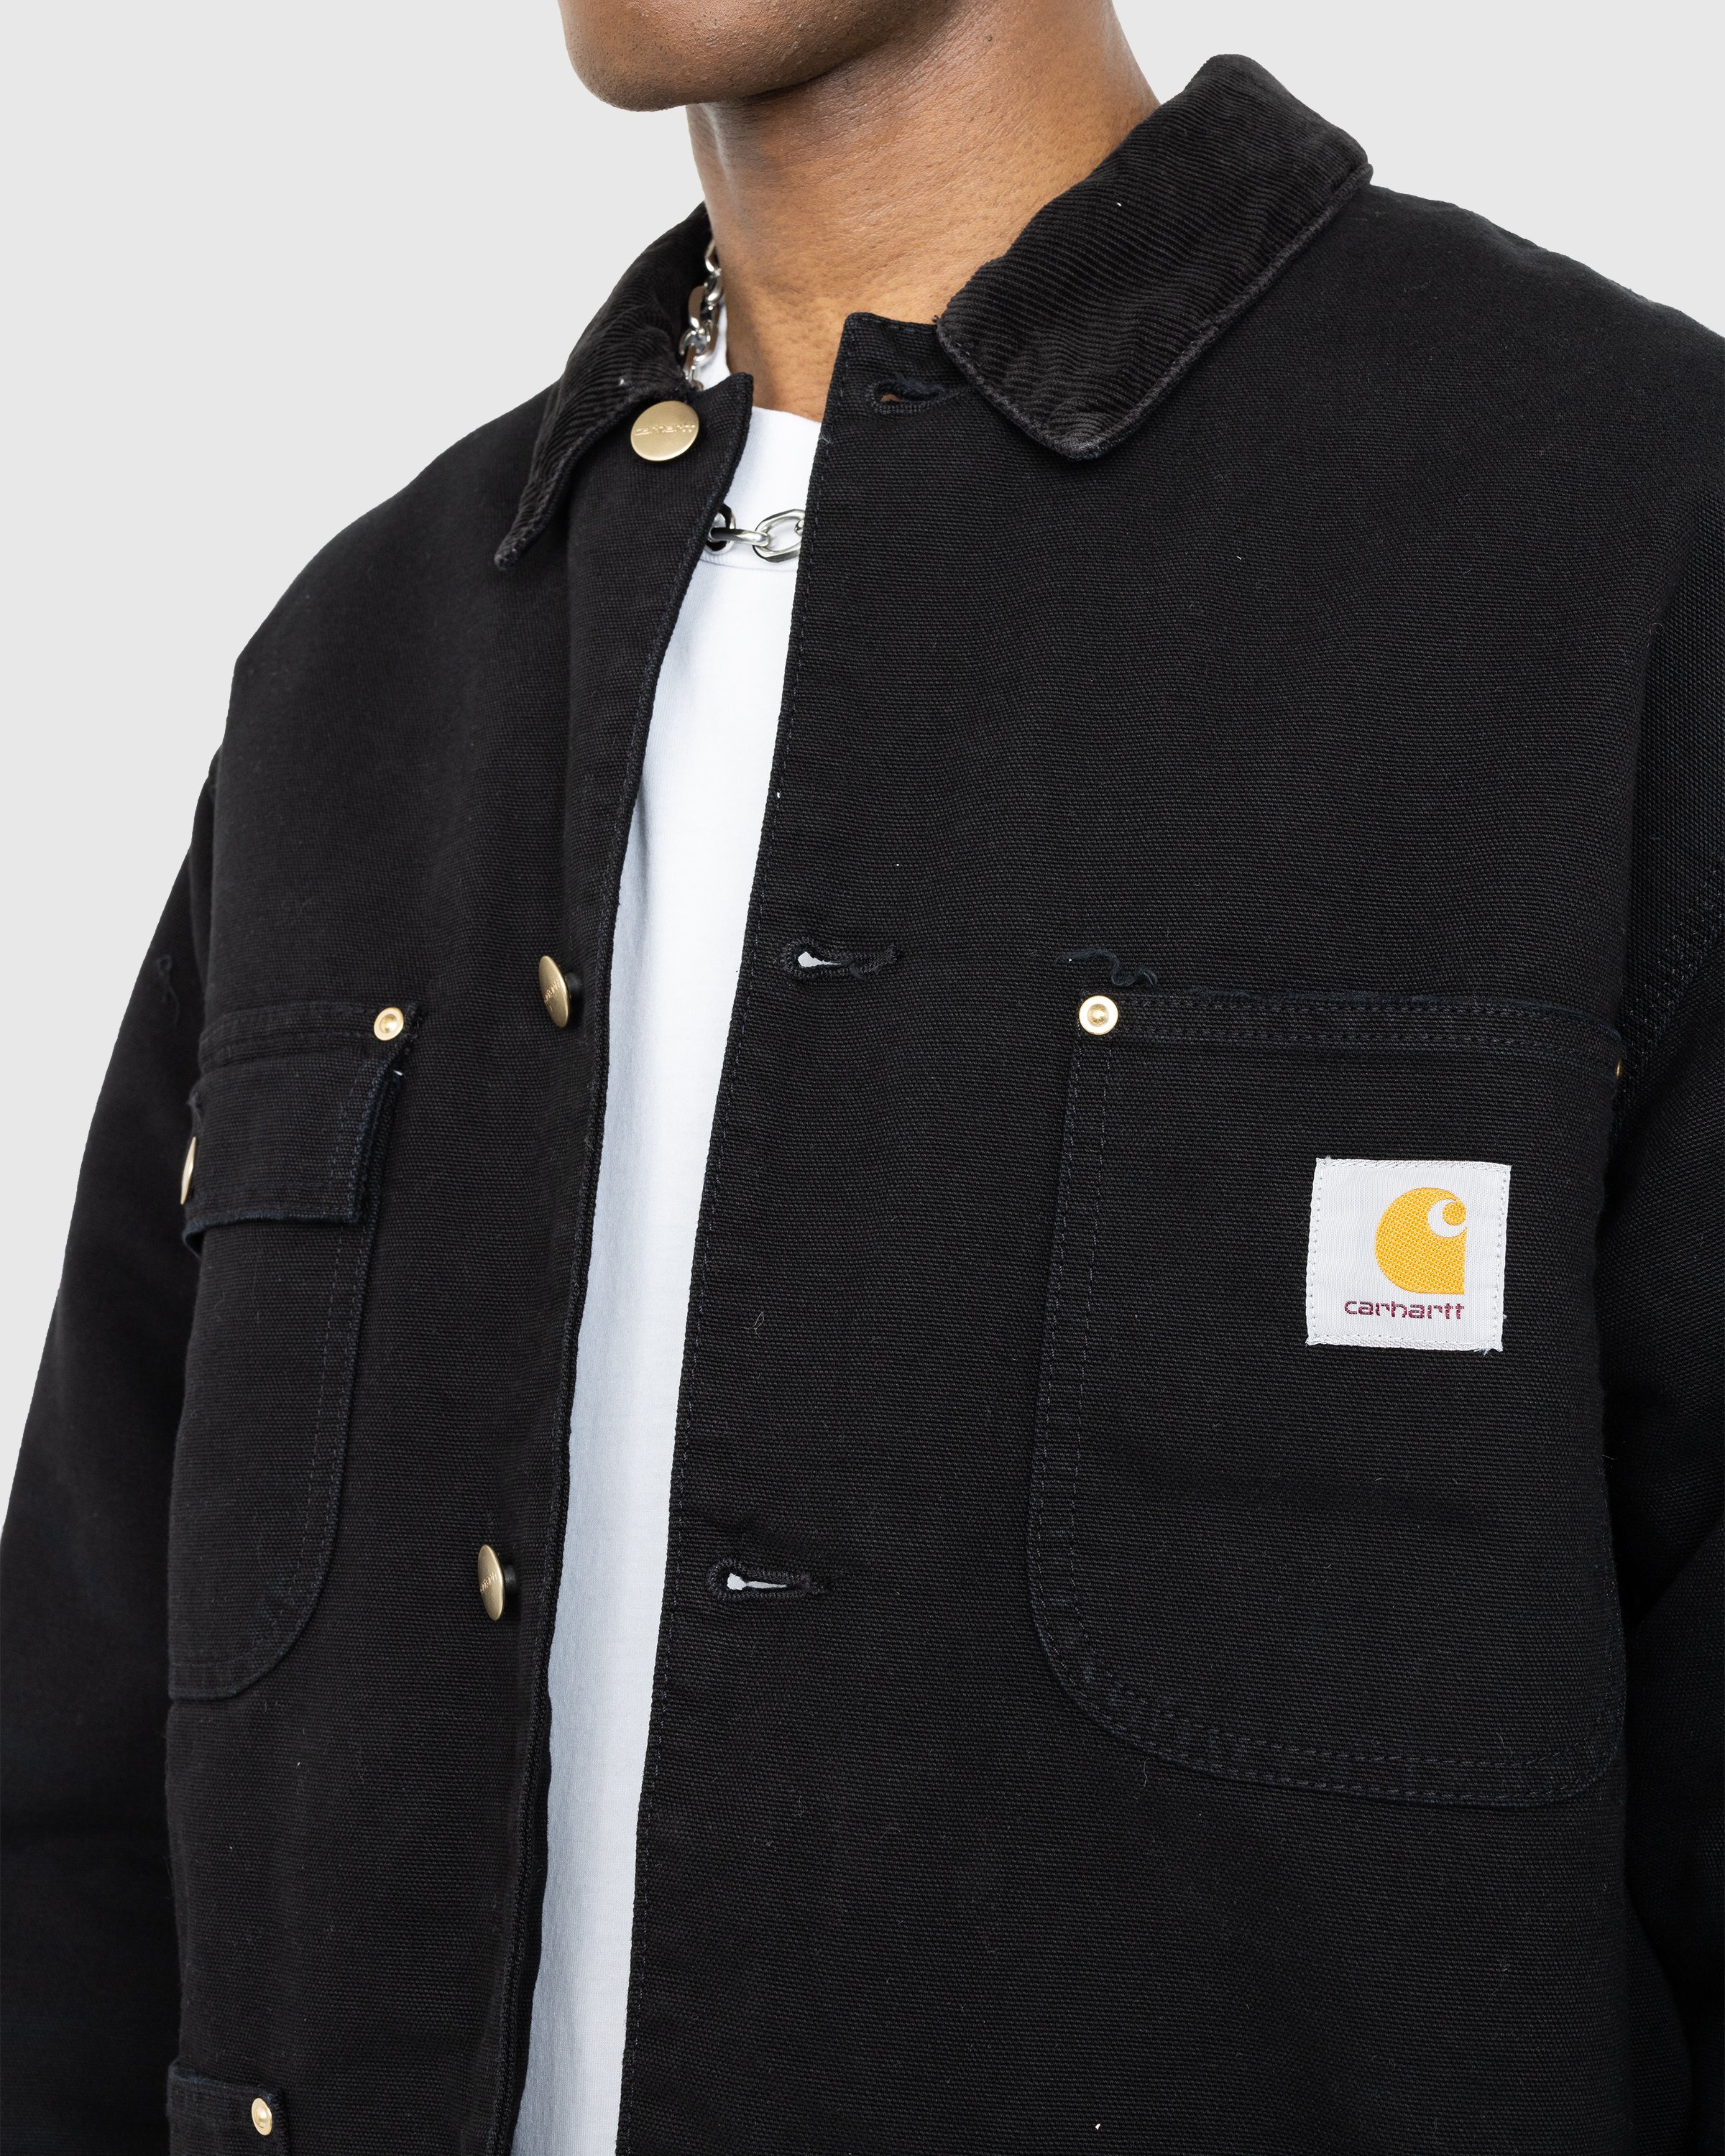 Carhartt WIP - OG Chore Coat Black/Aged Canvas - Clothing - Black - Image 4